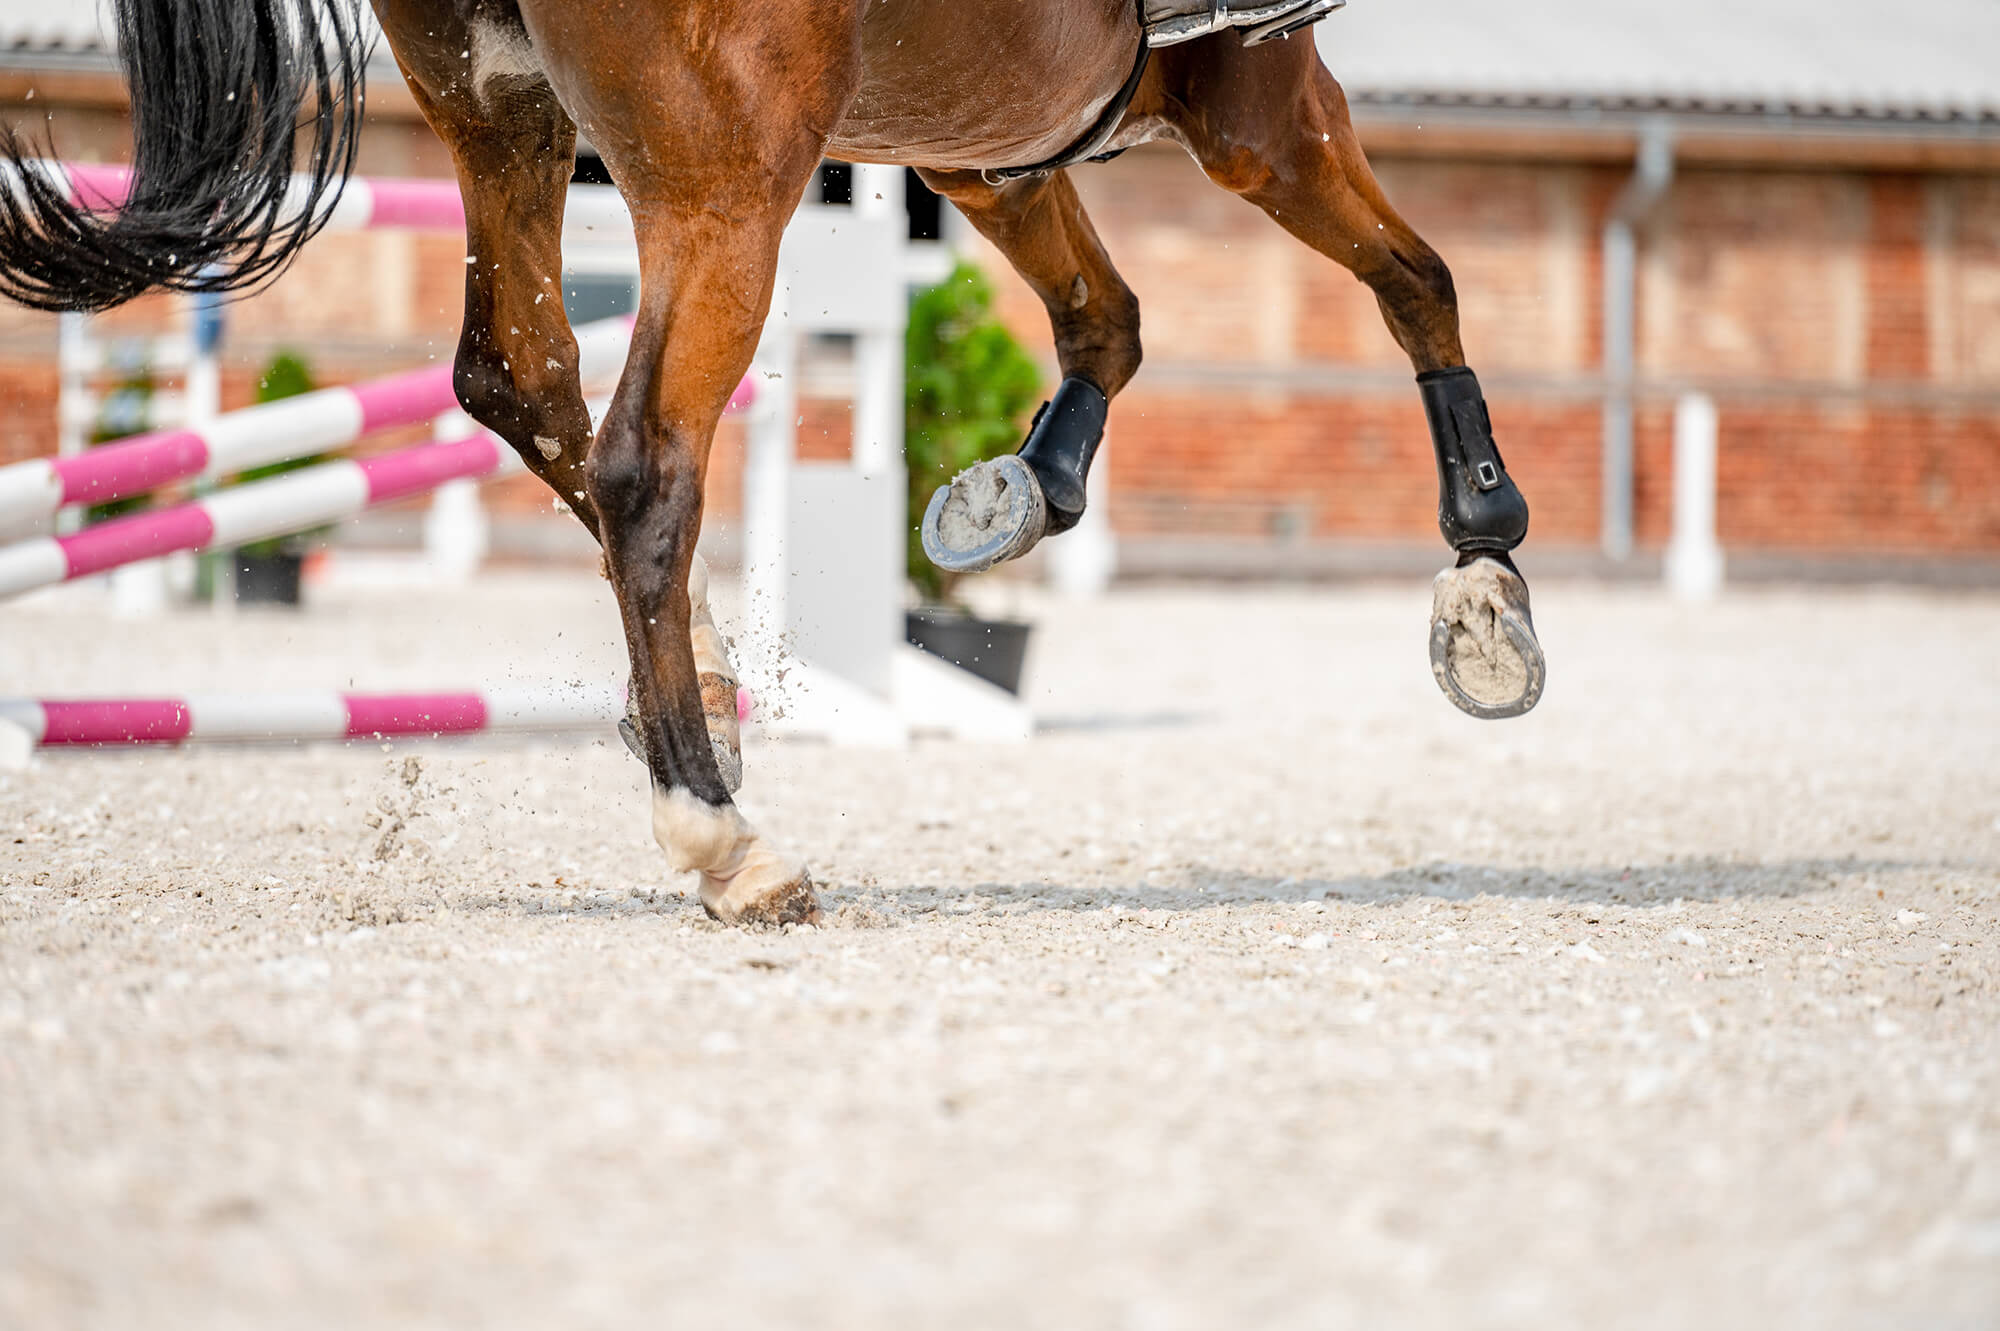 Nahaufnahme der Hufe und Beine eines springenden Pferdes mit Schutzgamaschen, das Sand auf einem Reitplatz aufwirbelt, mit unscharfen Hindernissen im Hintergrund